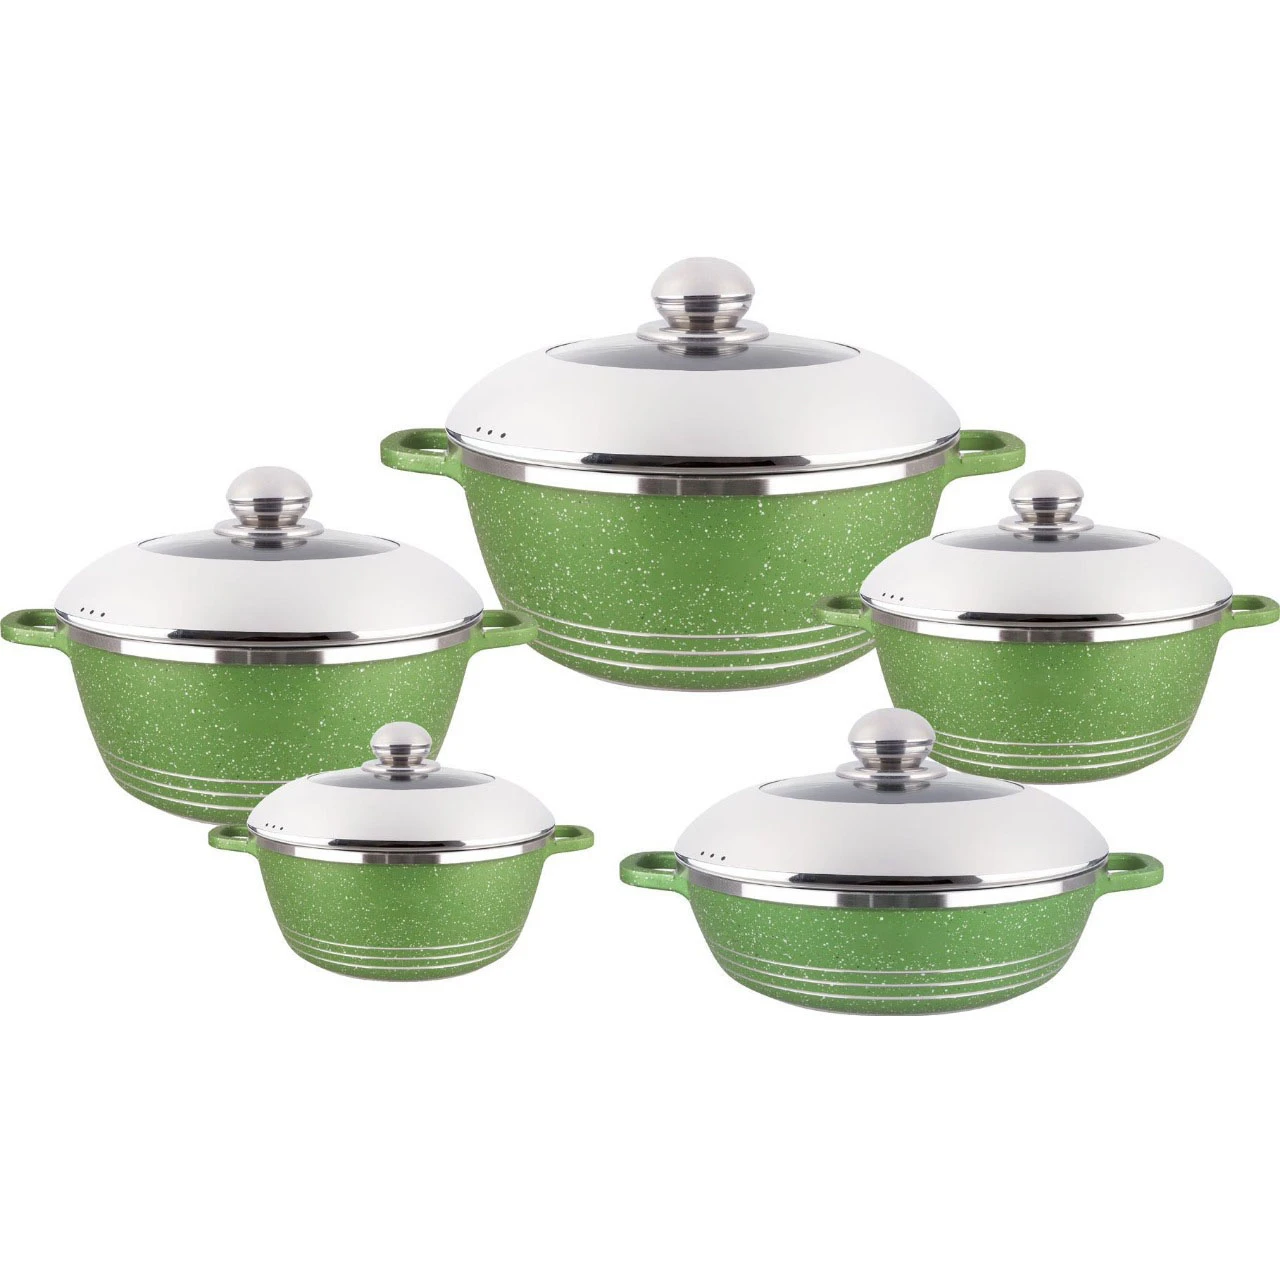 Shoucheng Aluminum Cookware 10-Piece Cookware Soup Pot Kitchenware Set Aluminum Cookware Set